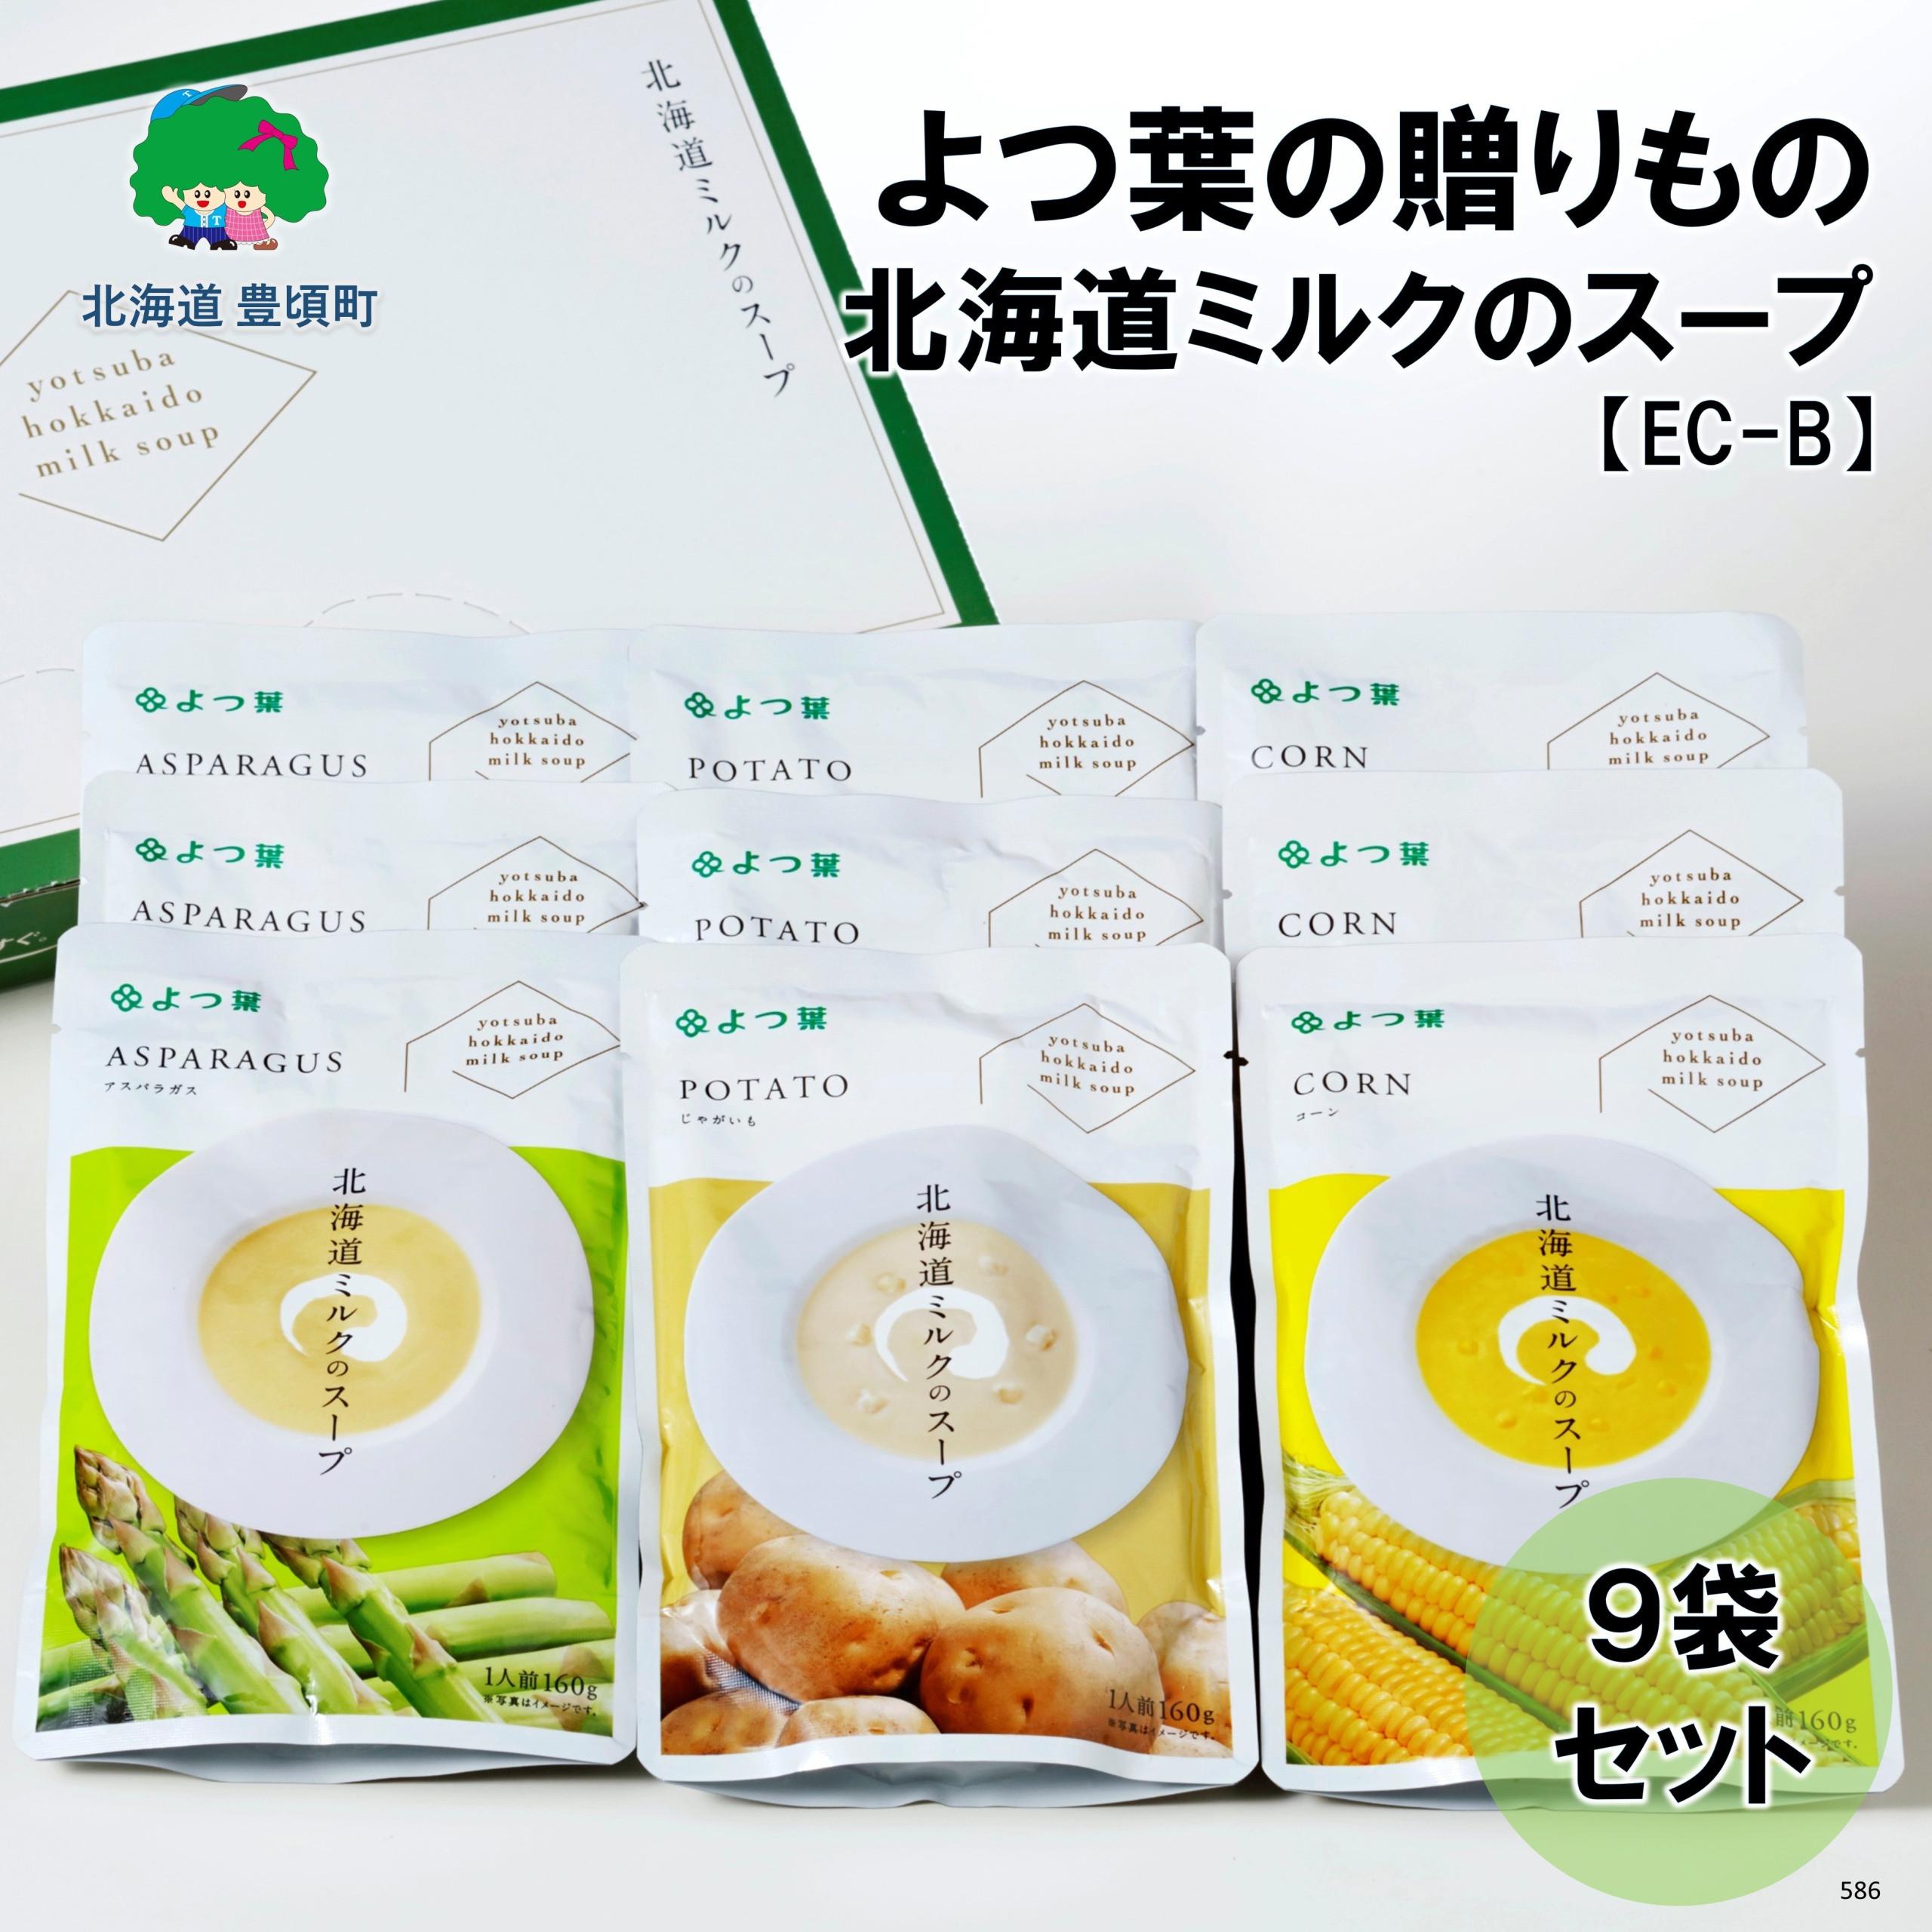 
よつ葉の贈り物 北海道ミルクのスープの9袋セット【EC-B】[№5891-0586]
